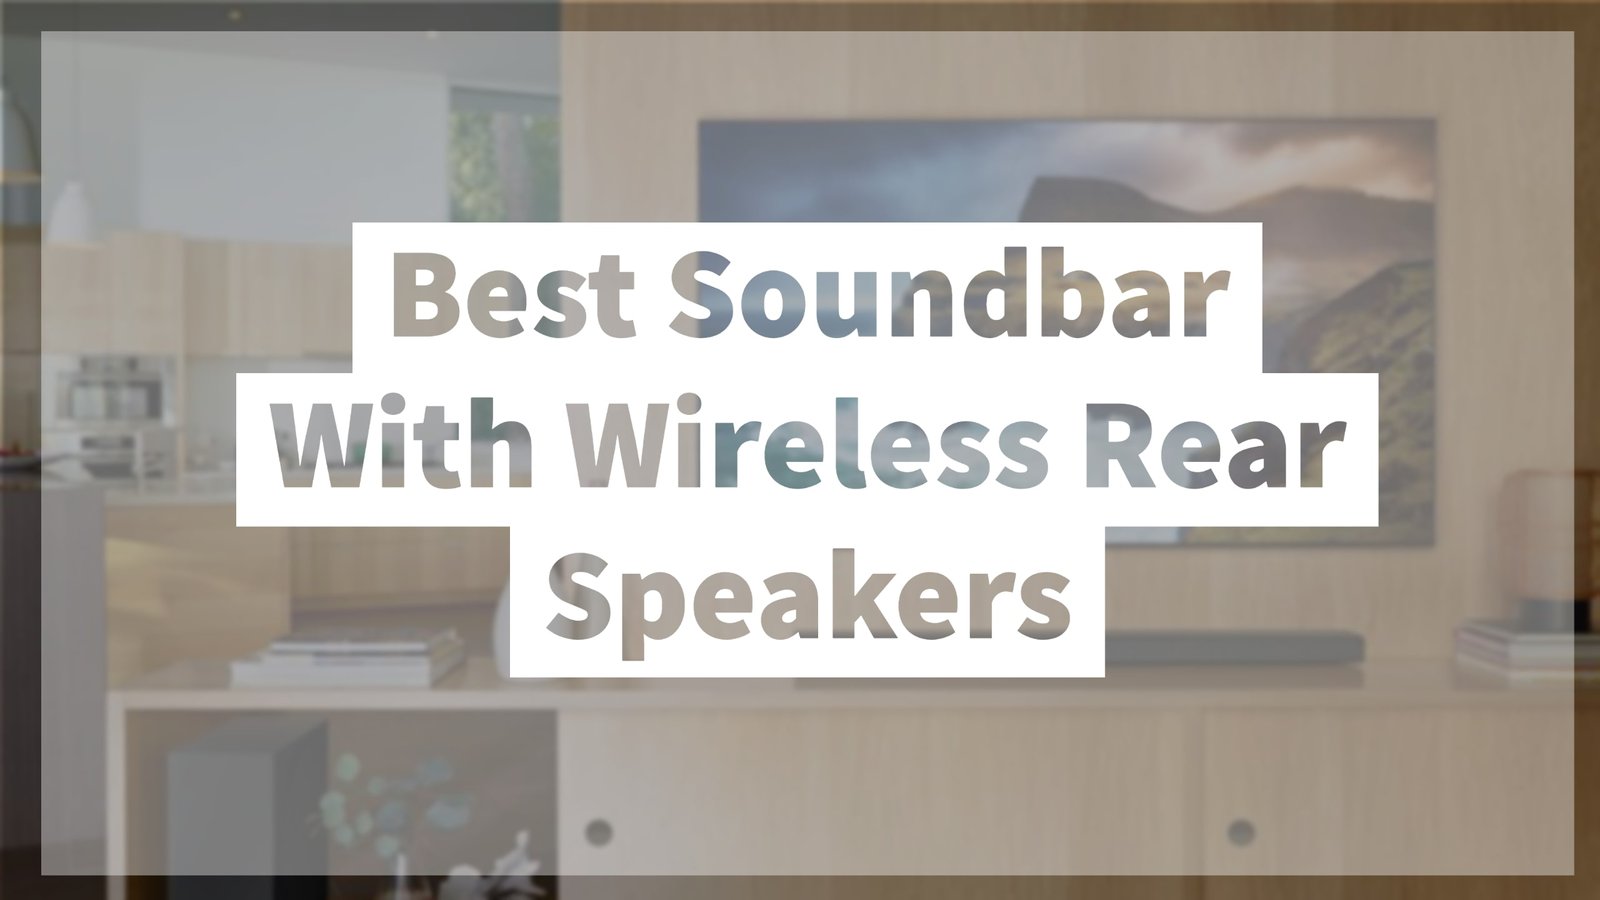 Best Soundbar With Wireless Rear Speakers thumbnail by speakerjournal.com